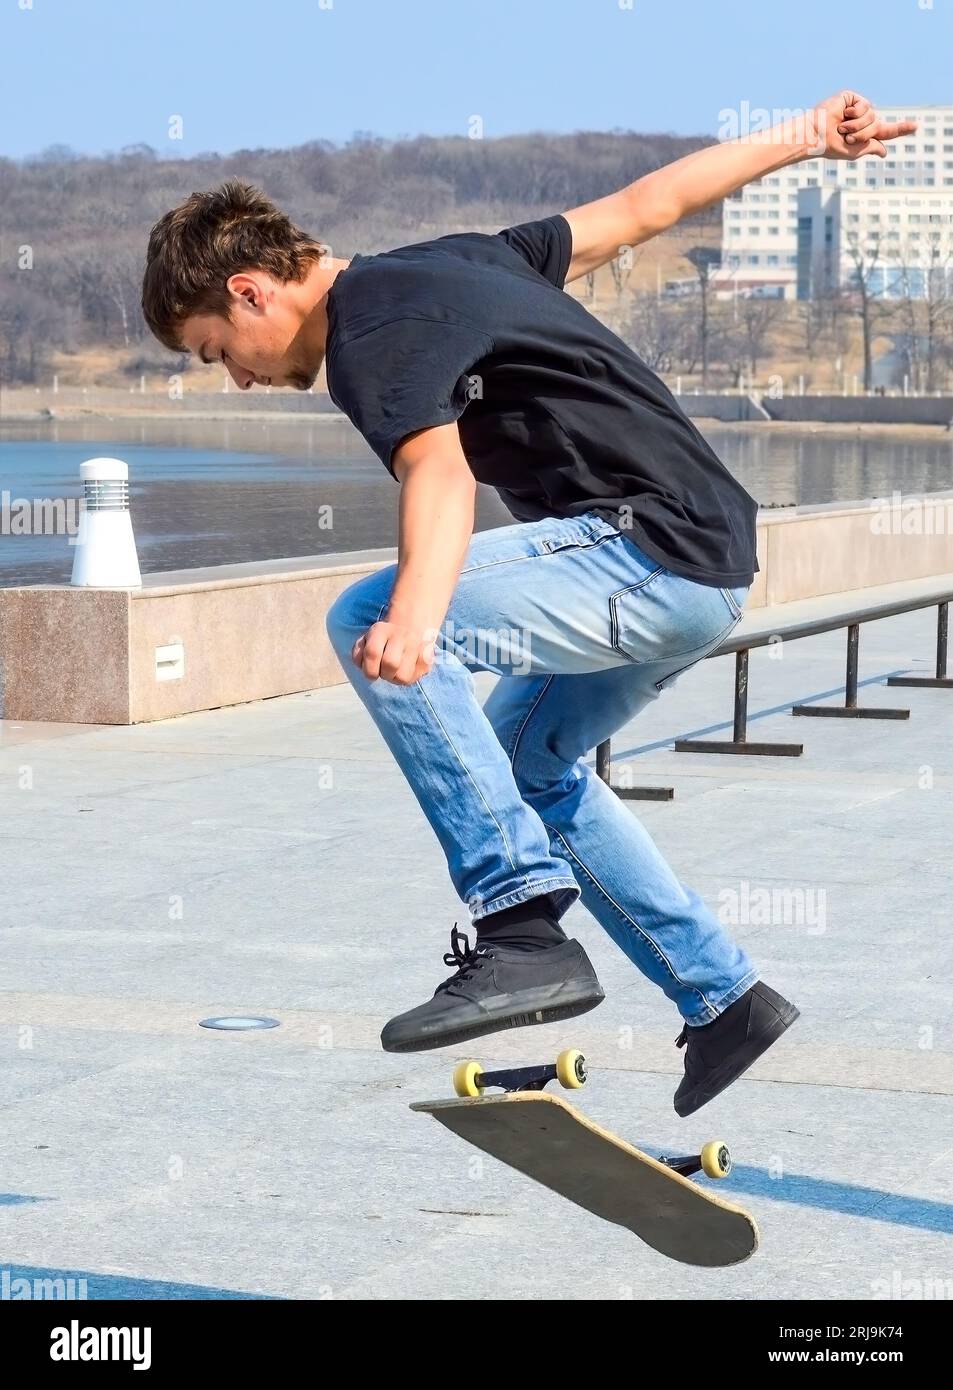 Junger russischer Skater in schwarzem T-Shirt und blauer Jeans, der an einem frühen Frühlingstag auf dem Skateboard springt Stockfoto